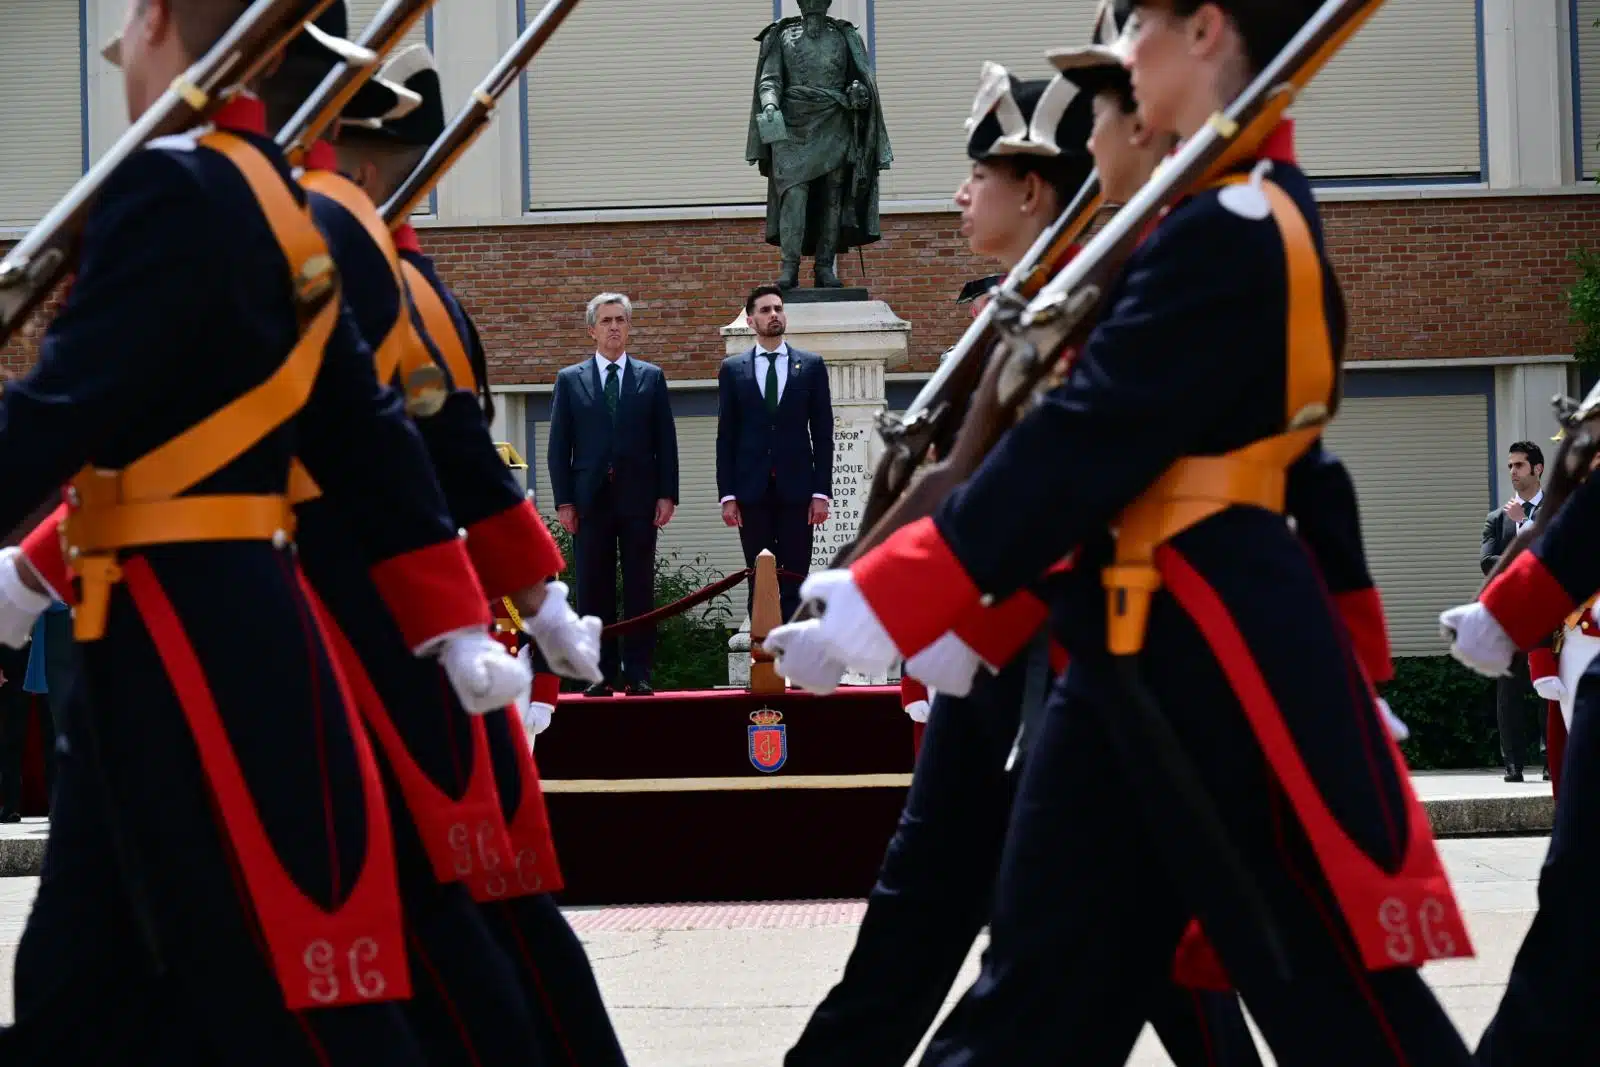 La Guardia Civil cumple 180 años de historia en un acto conmemorativo formal